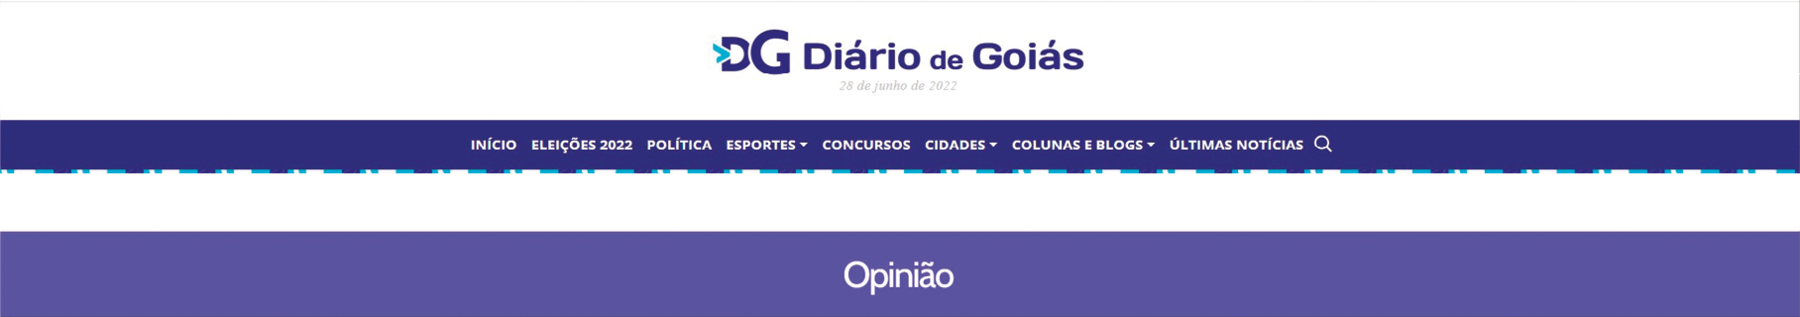 Reprodução de página da internet.
Diário de Goiás
Opinião